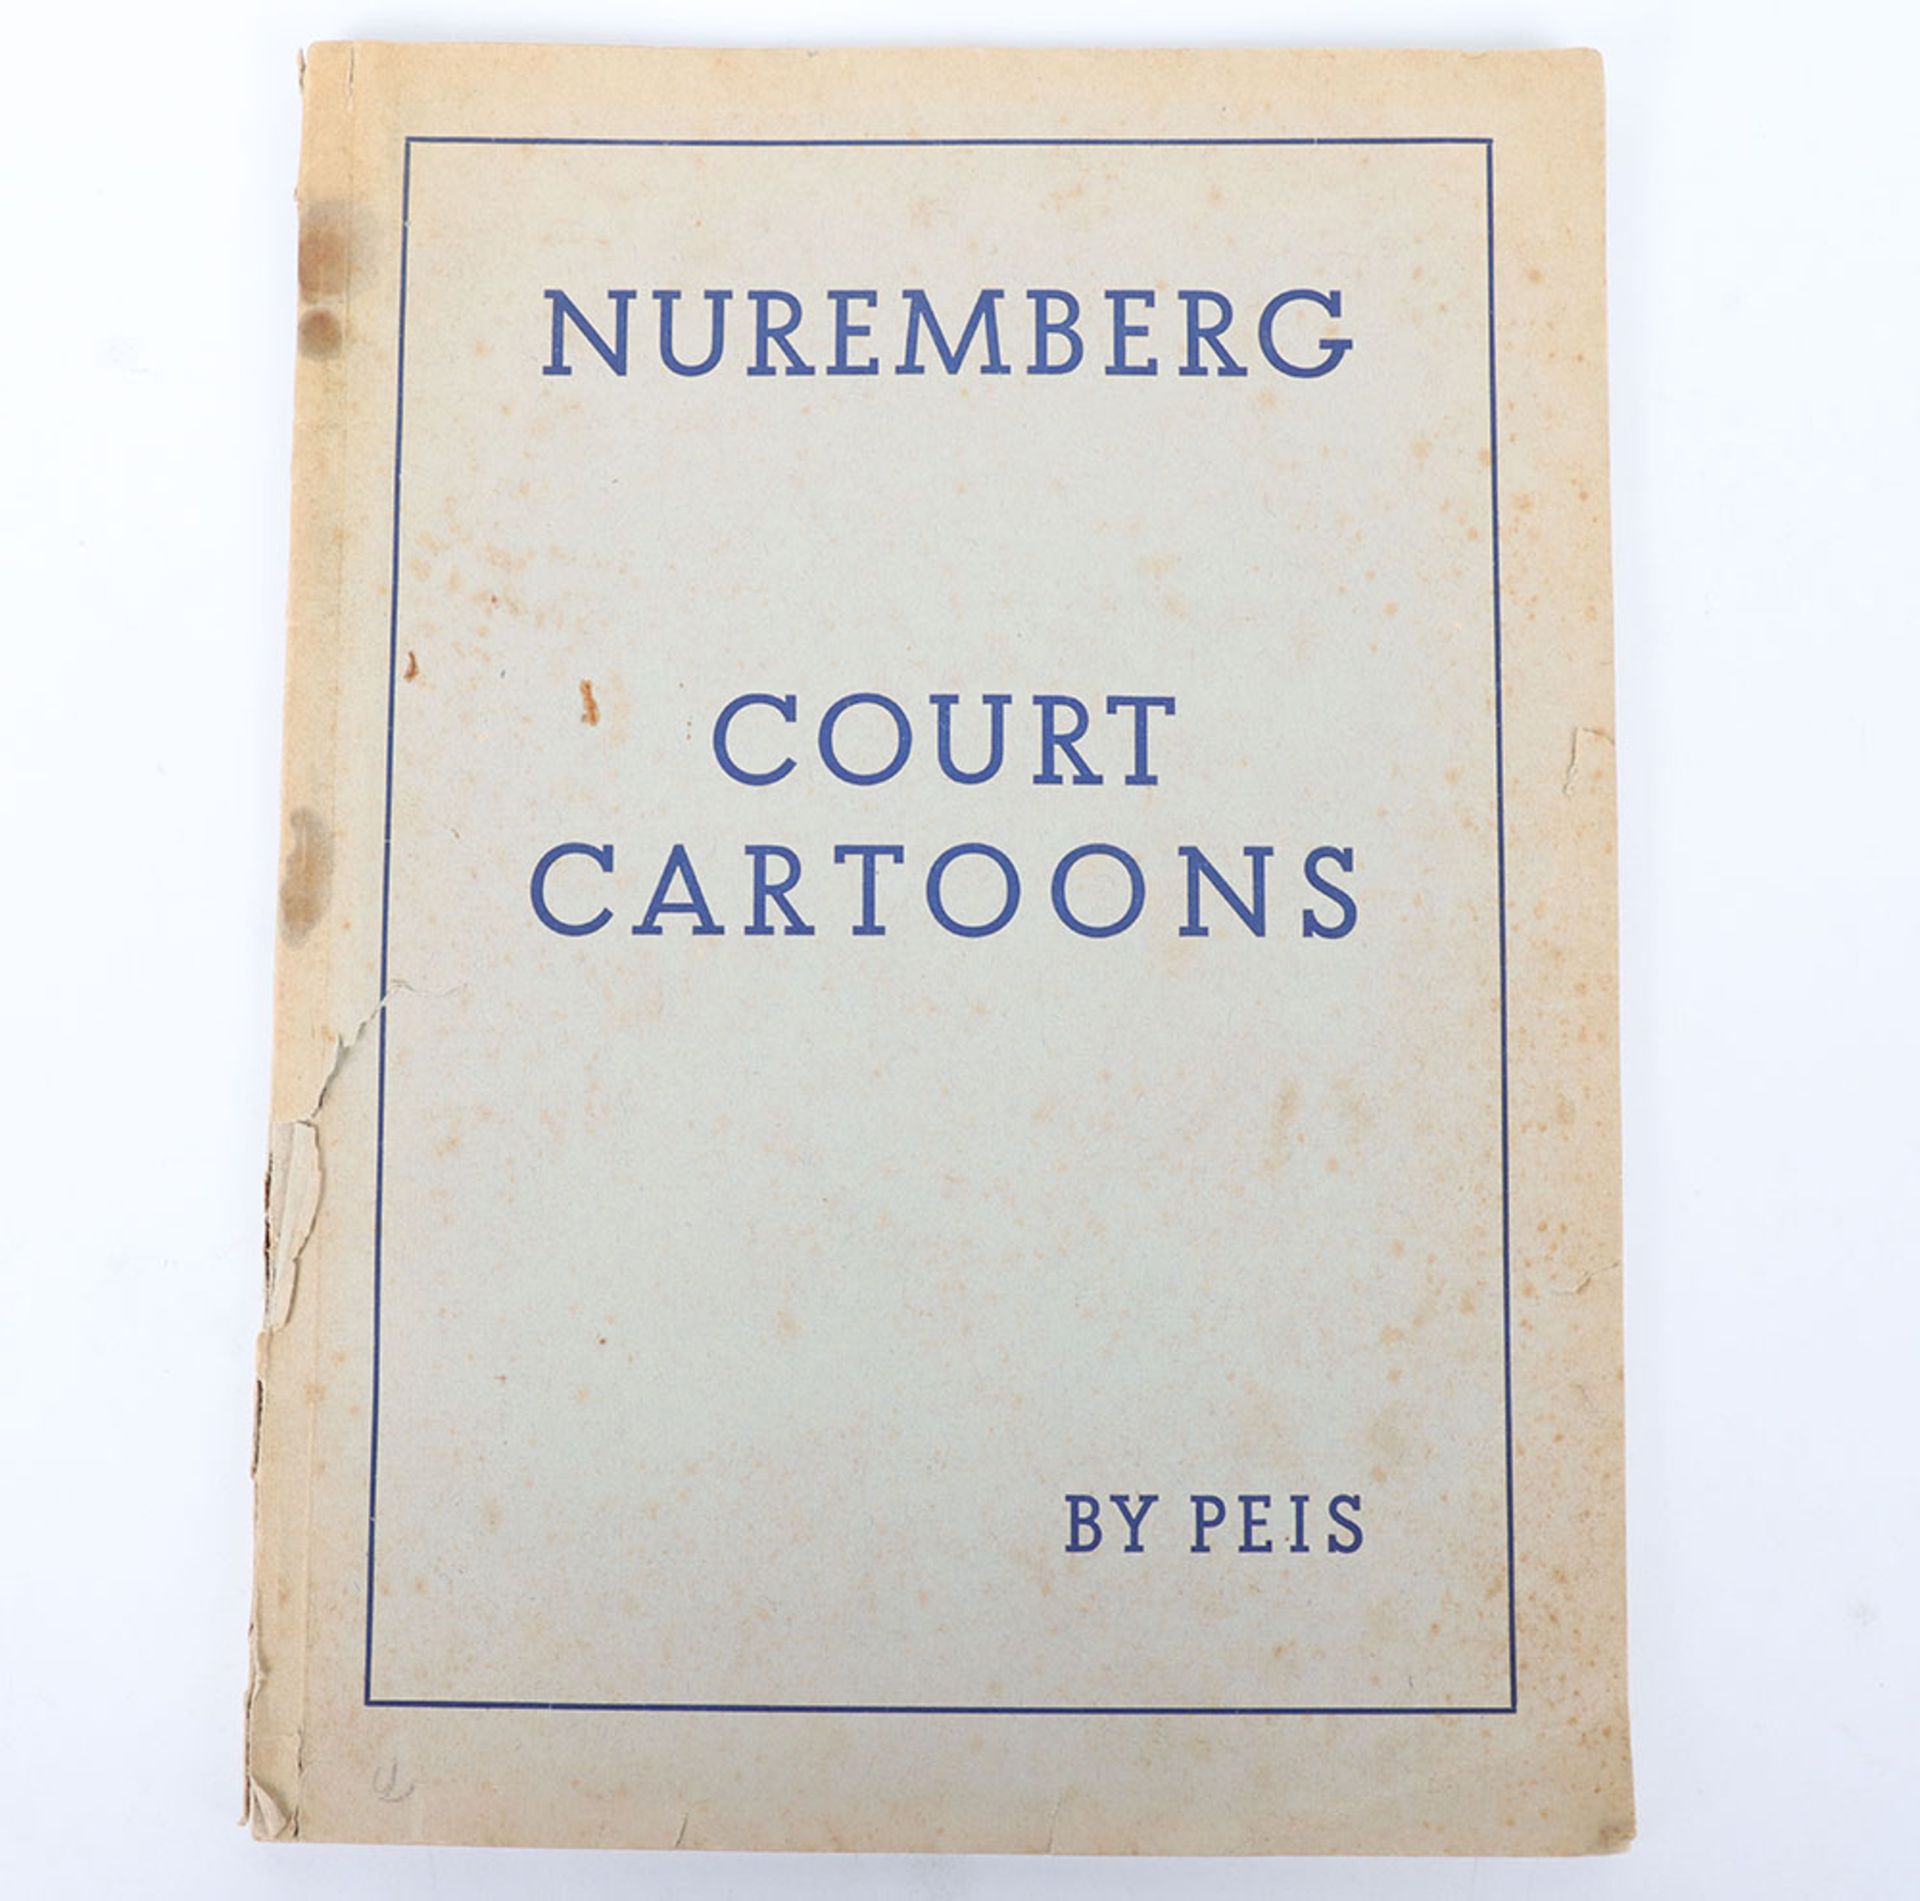 Rare 1945 Nuremberg Court Cartoons Book